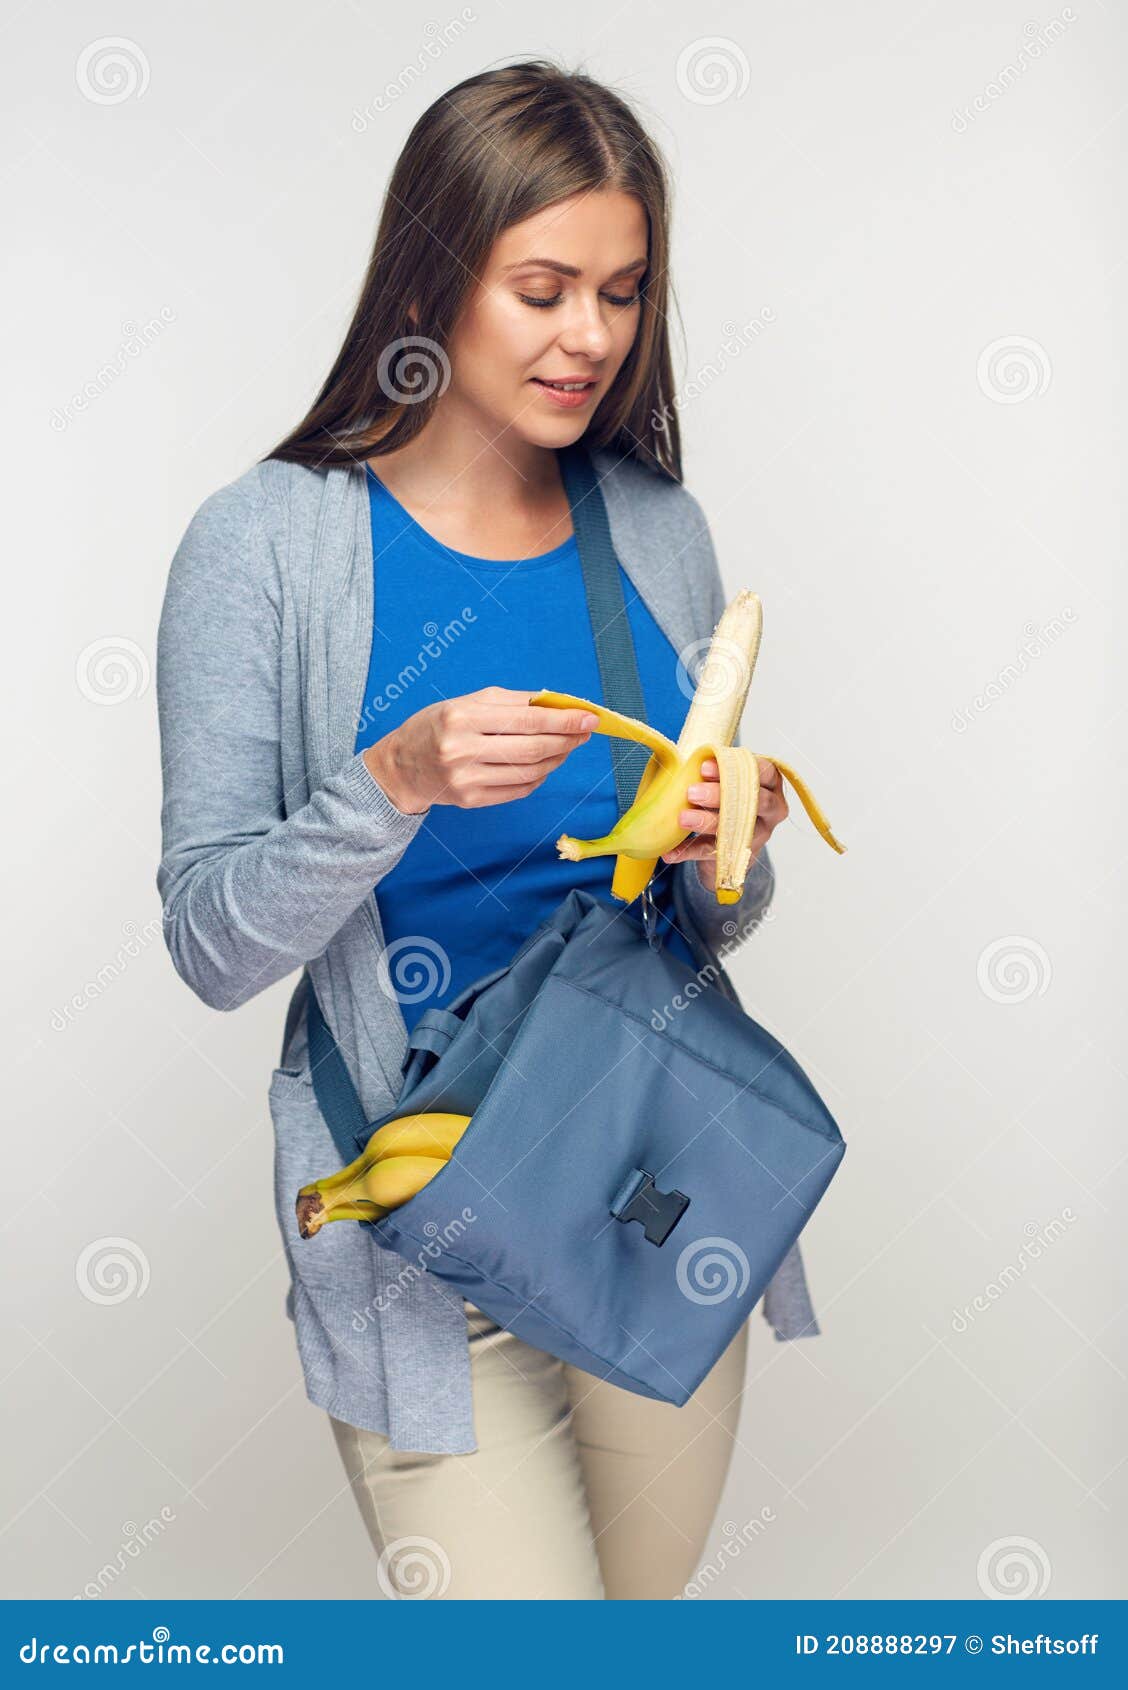 亚裔女孩吃香蕉 库存图片. 图片 包括有 表面, 愉快, 蔬菜, 生活方式, 聚会所, 现有量, 人们, 素食主义者 - 61952259